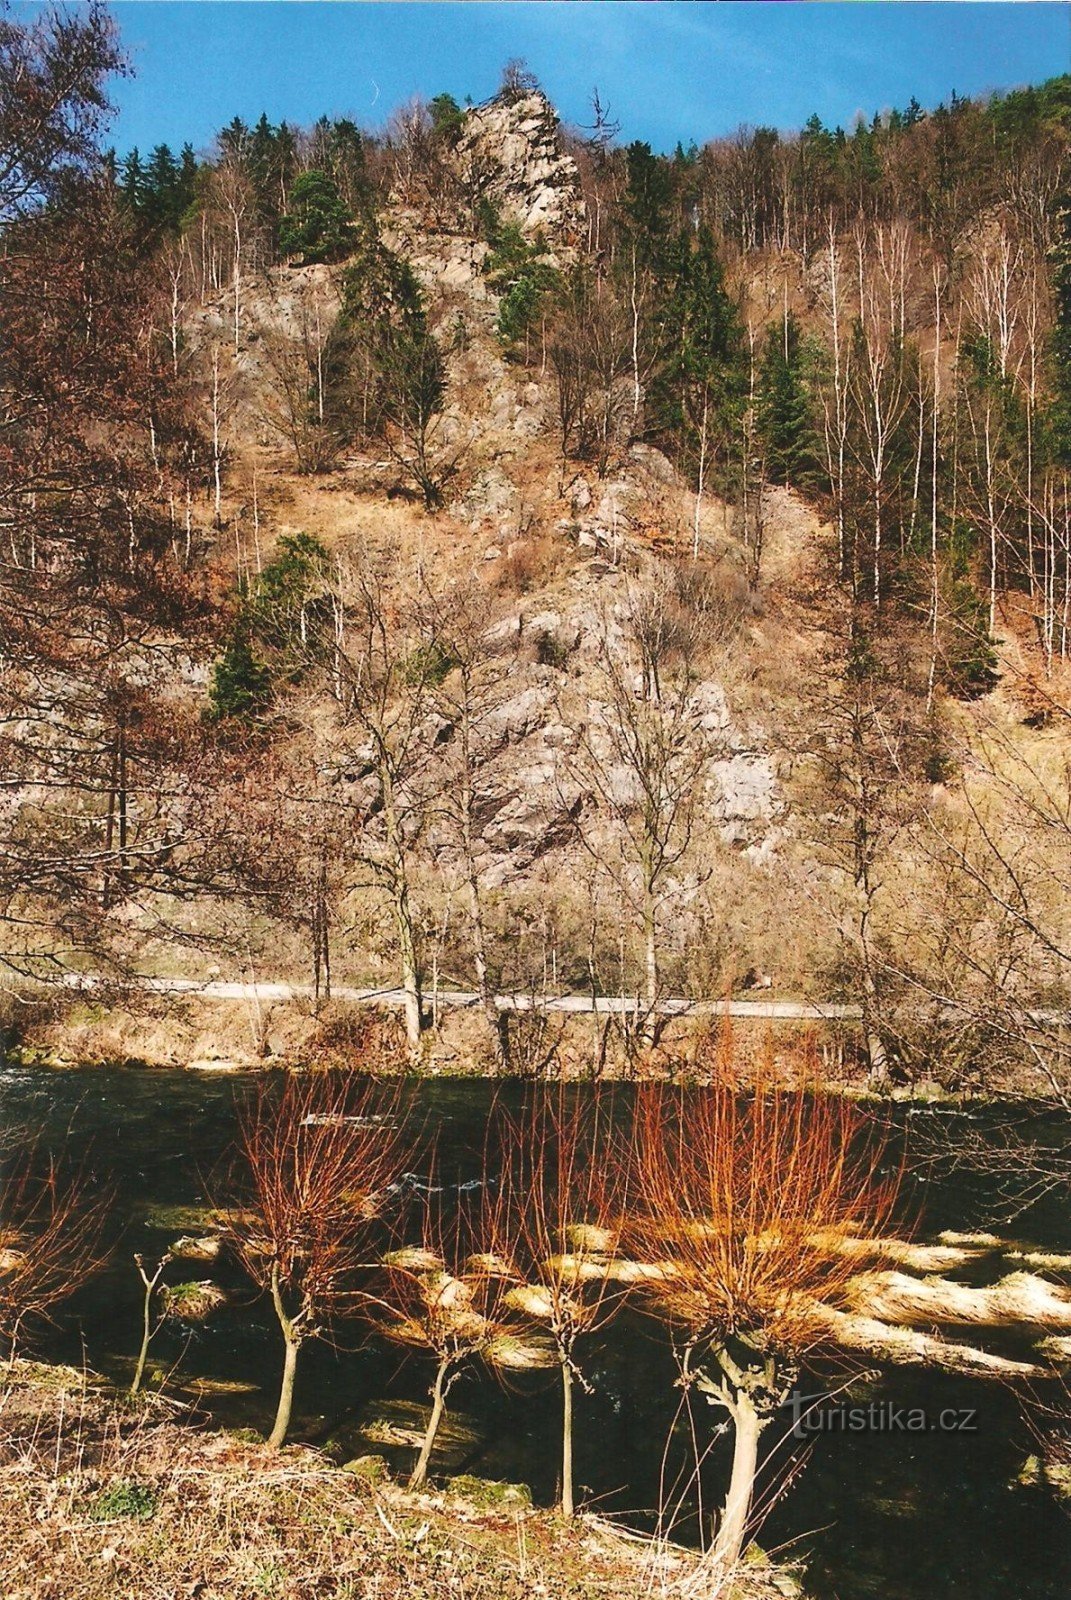 Вирский сад камней - смотровая площадка Клубачице